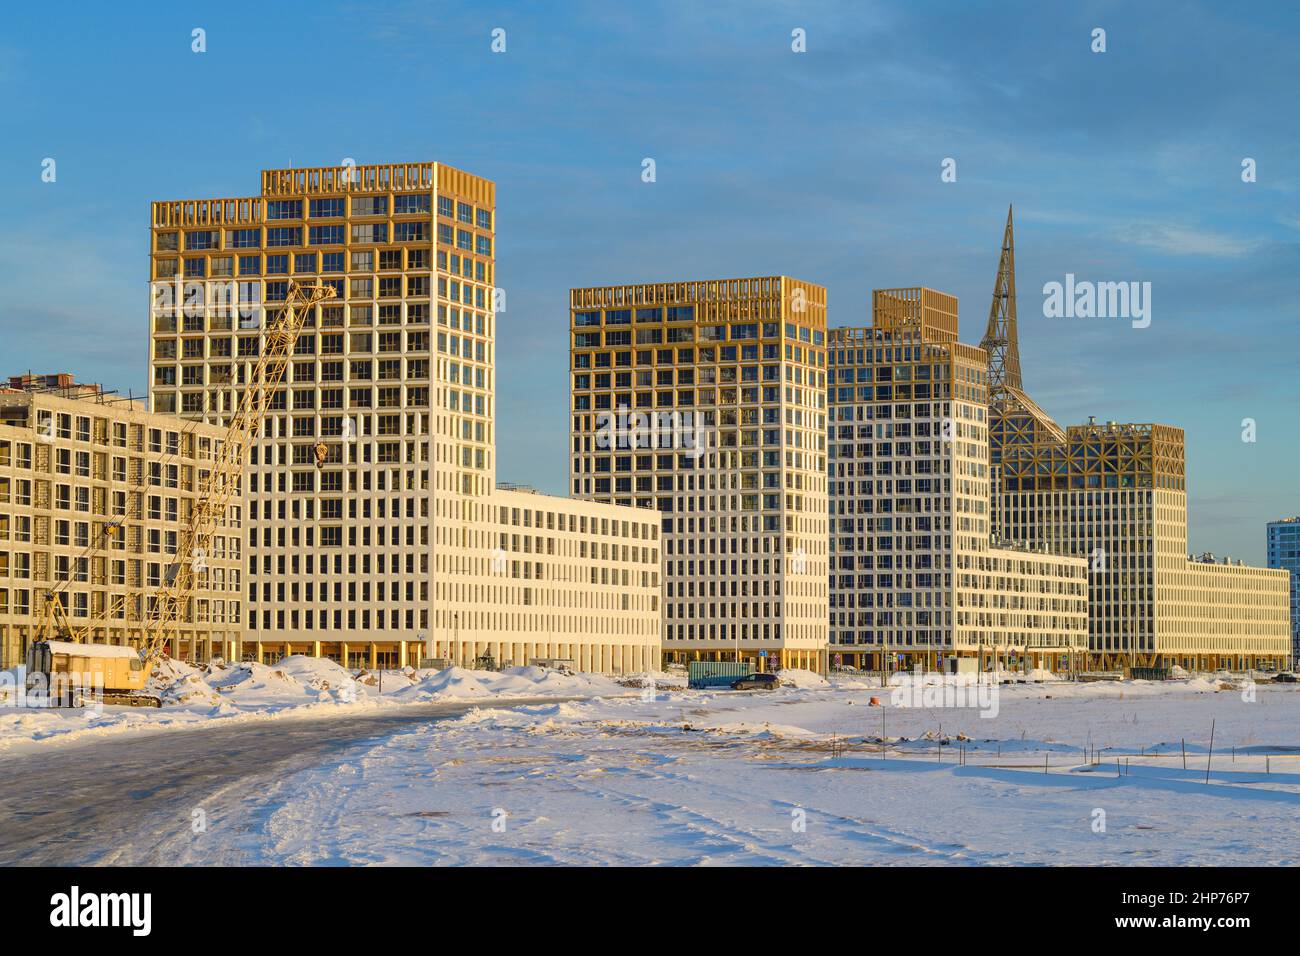 SANKT PETERSBURG, RUSSLAND - 10. DEZEMBER 2021: Blick auf den neuen modernen Wohnkomplex 'Golden City', der auf den Schwemmgebieten von Vasiljews erbaut wurde Stockfoto